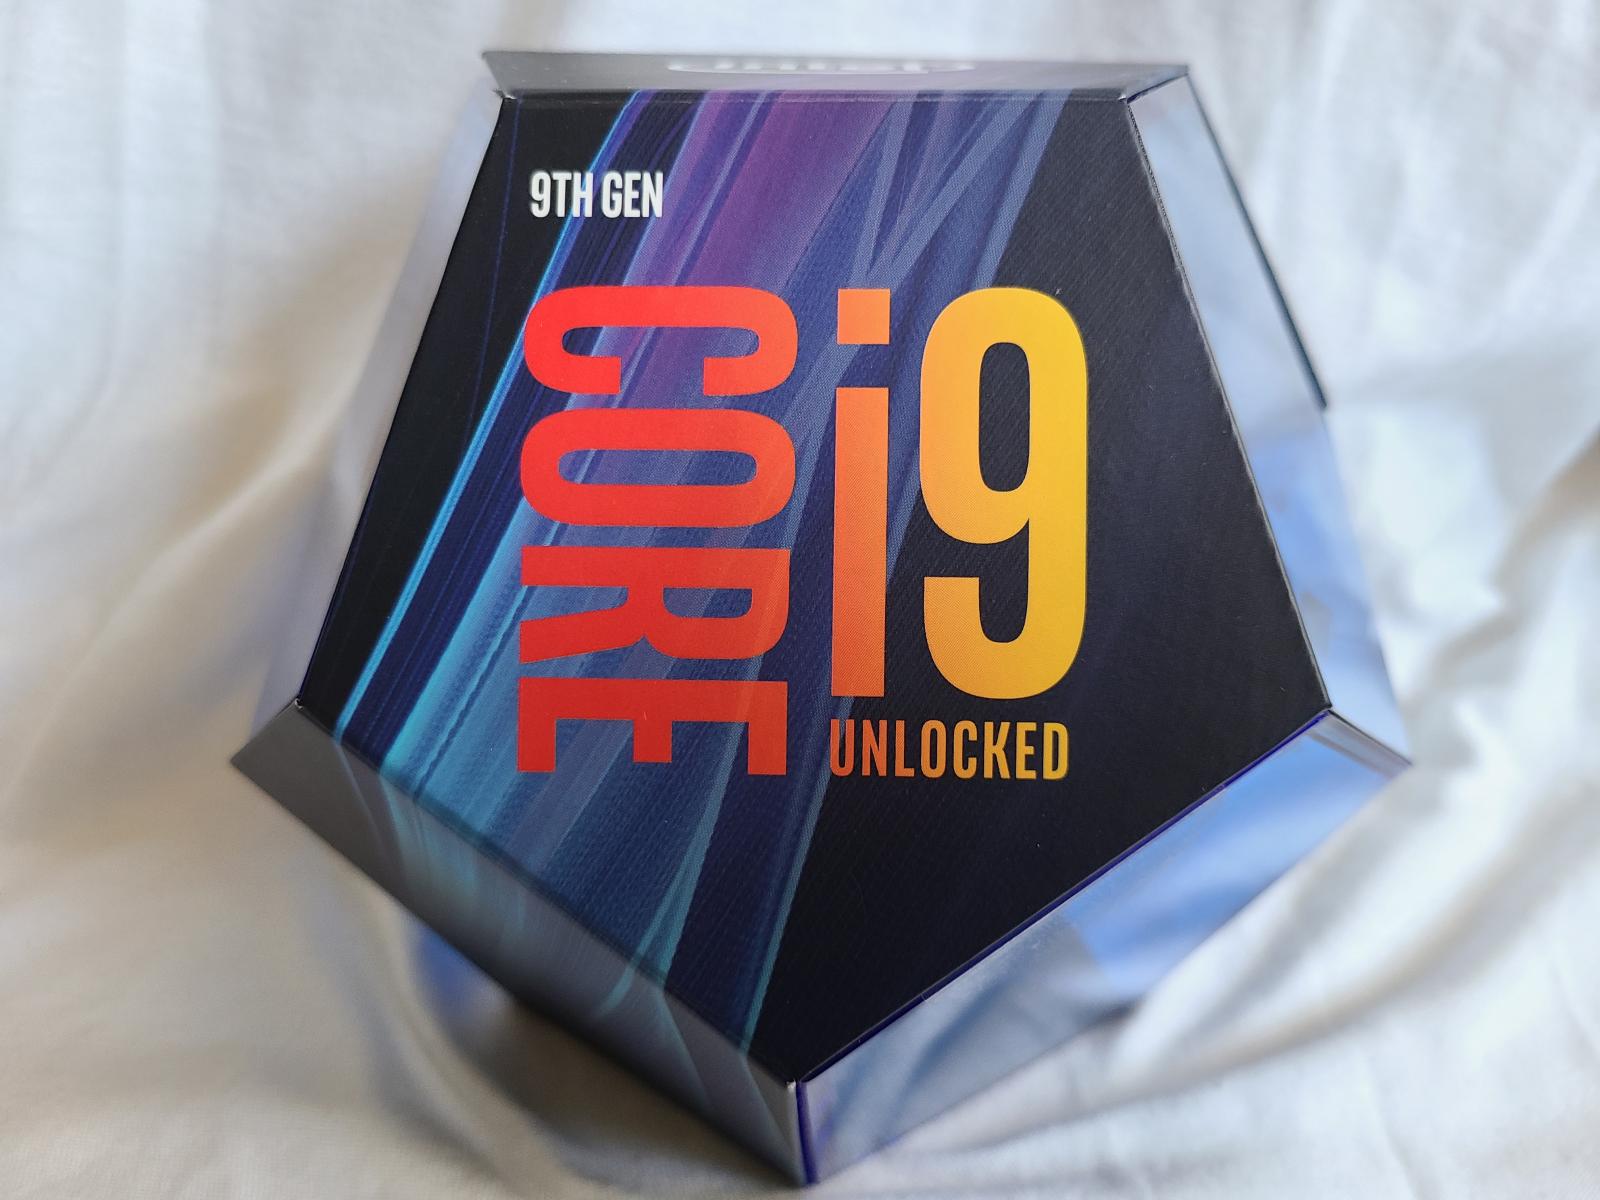 For sale Core i9-9900K in original box